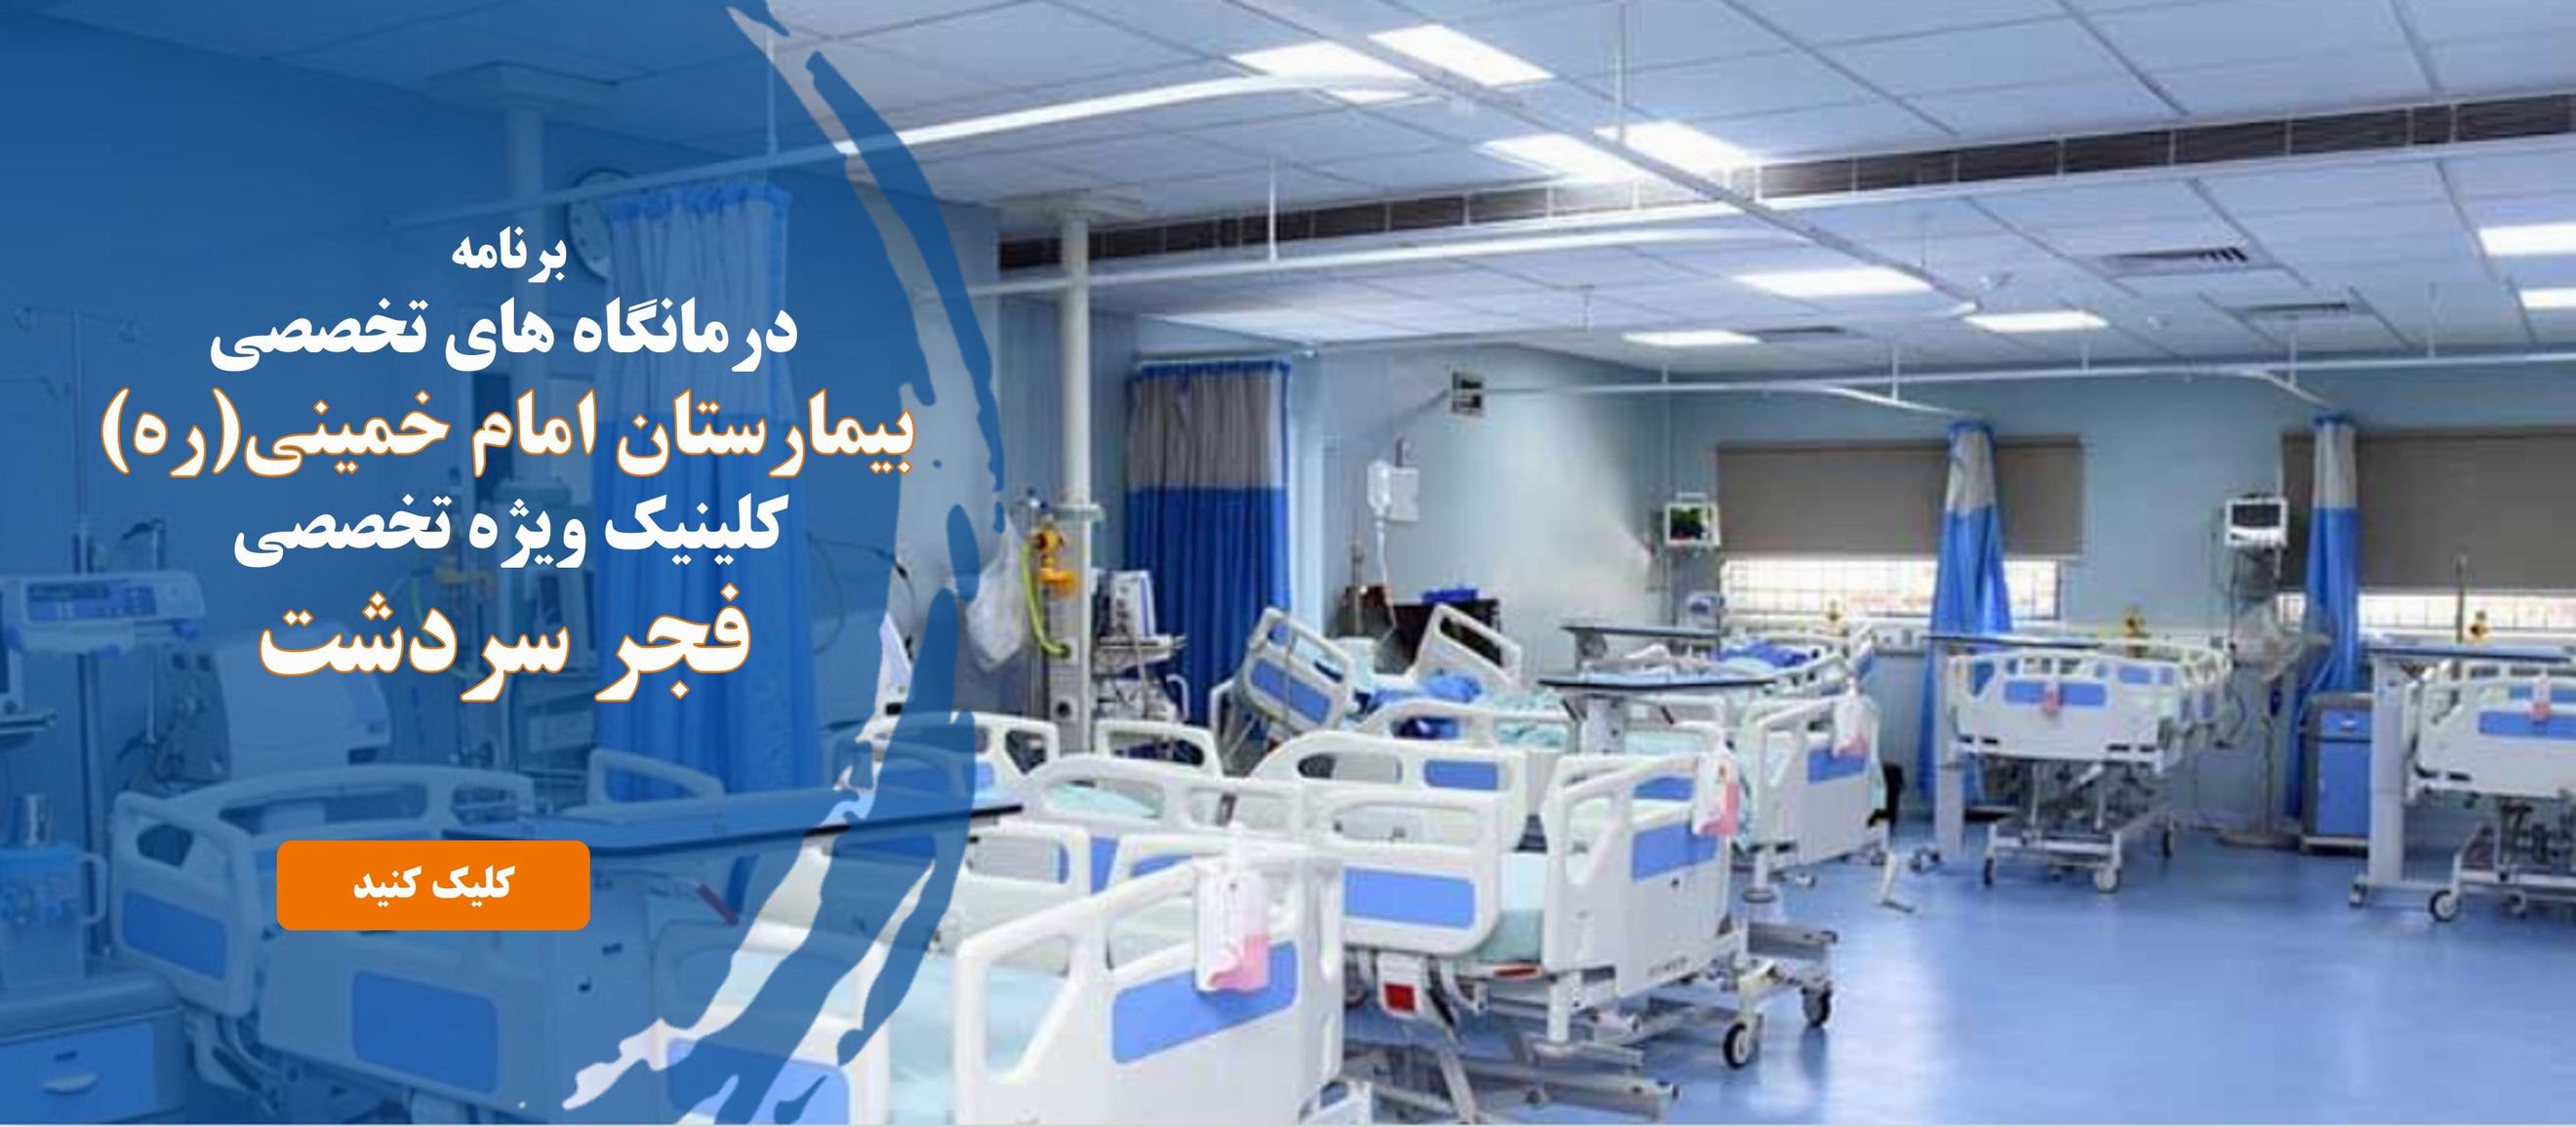 برنامه  درمانگاه های تخصصی  بیمارستان امام خمینی(ره)  کلینیک ویژه تخصصی  فجر سردشت